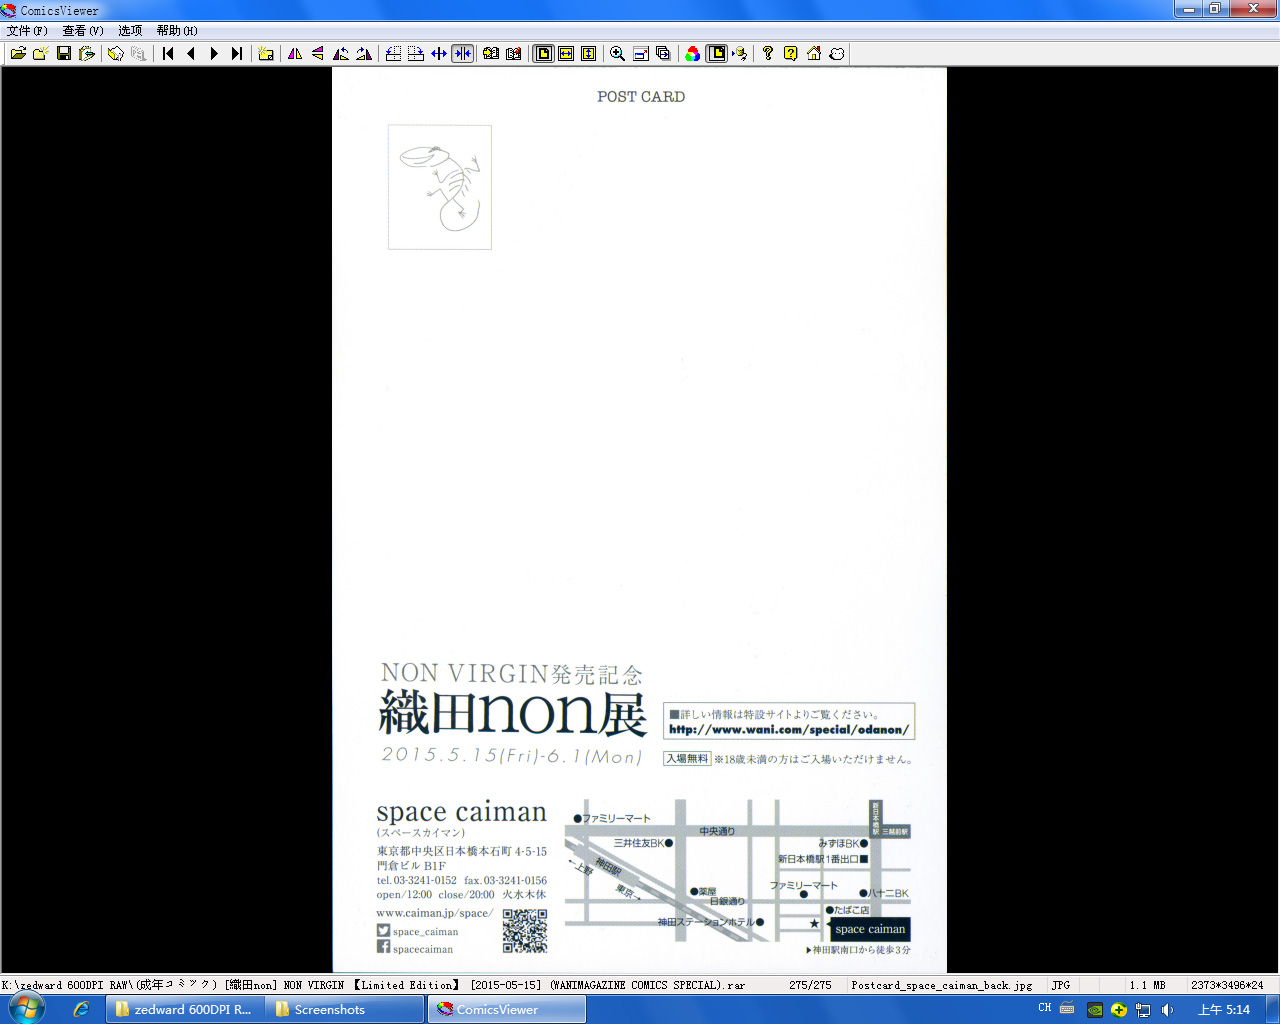 [織田non] NON VIRGIN 【Limited Edition】 CHRONICLE-FULLCOLOR BOOKLET-SIDE:MELON + TORA + NON VIRGIN LINE WORKS + Postcard